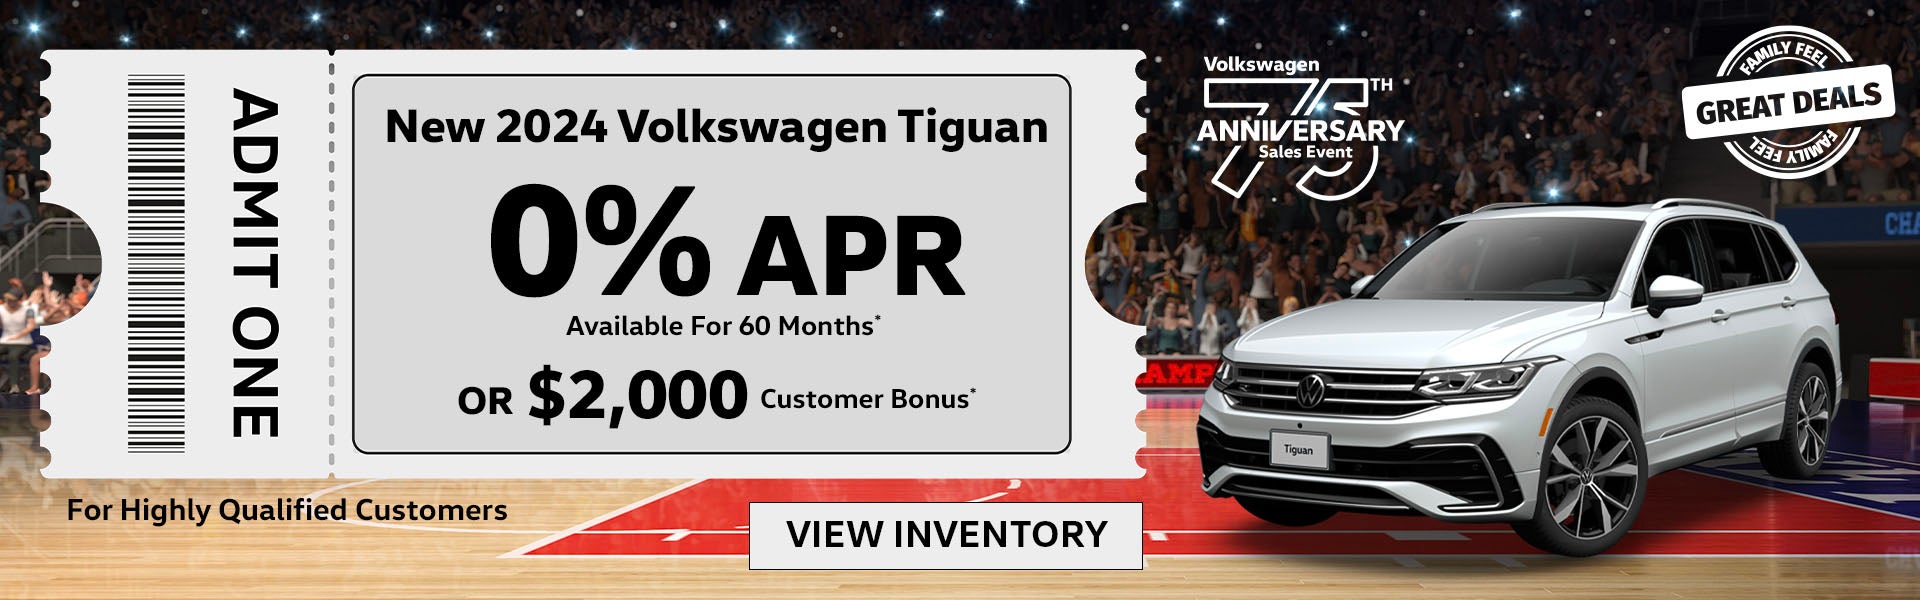 New 2024 Volkswagen Tiguan 